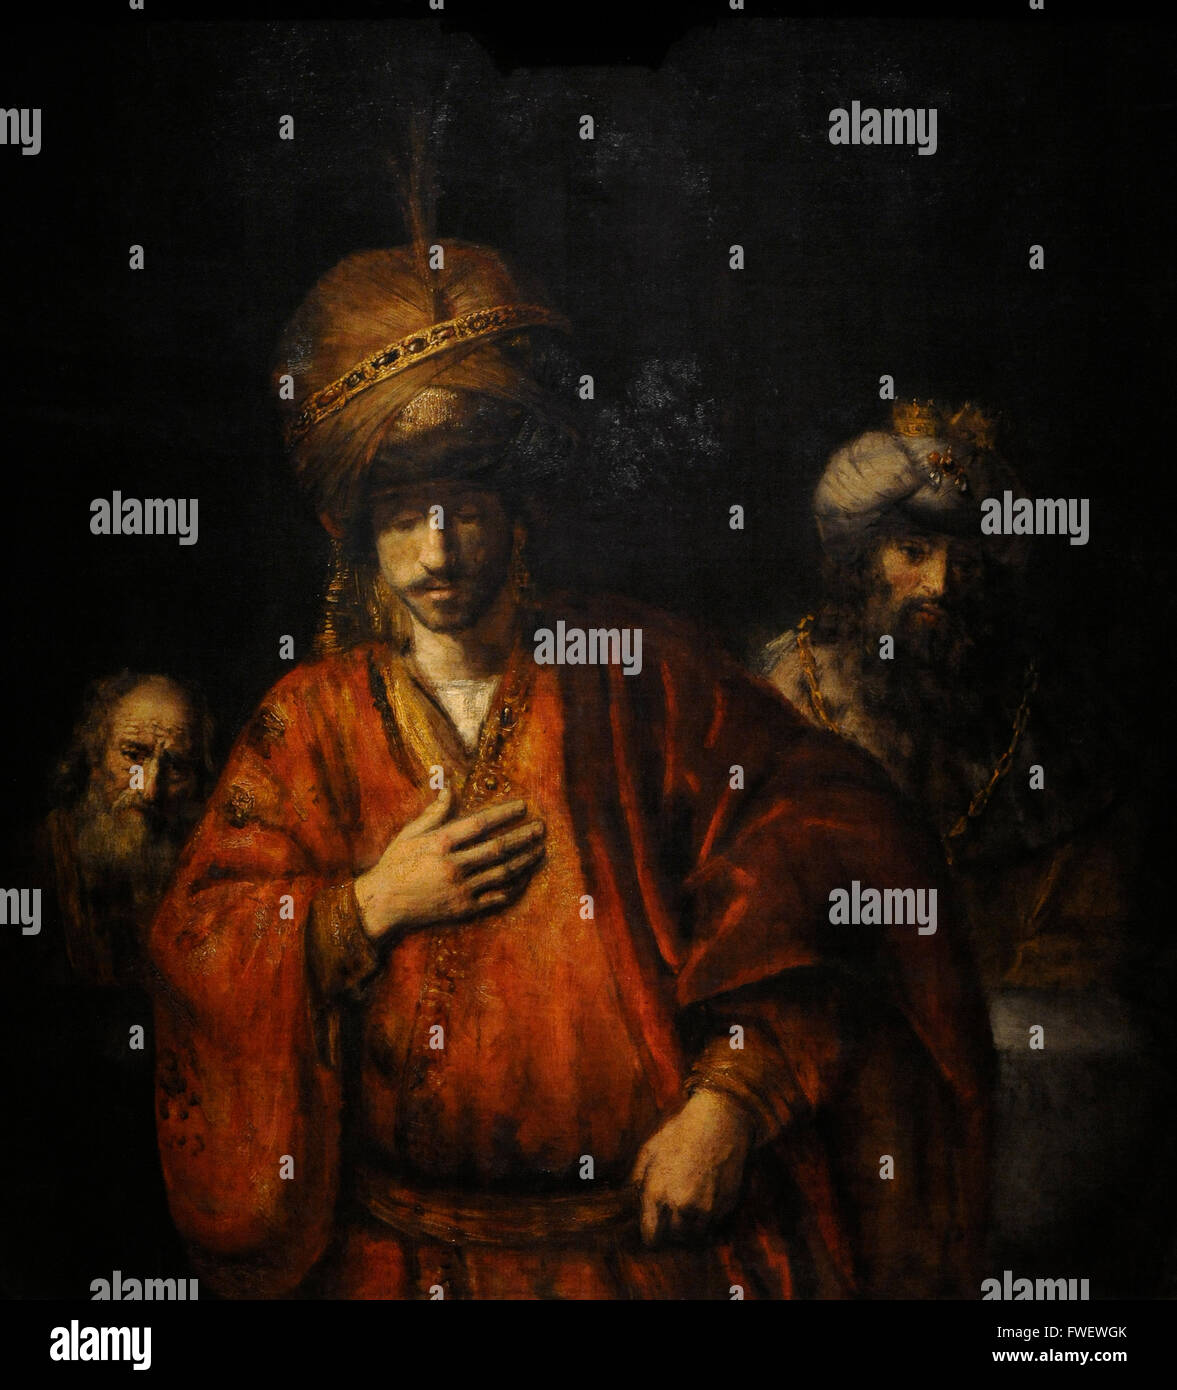 Rembrandt Harmenszoon van Rijn (1606-1669). Niederländischer Maler. Haman erkennt sein Schicksal, 1660-1665. Die Eremitage. Sankt Petersburg. Russland. Stockfoto